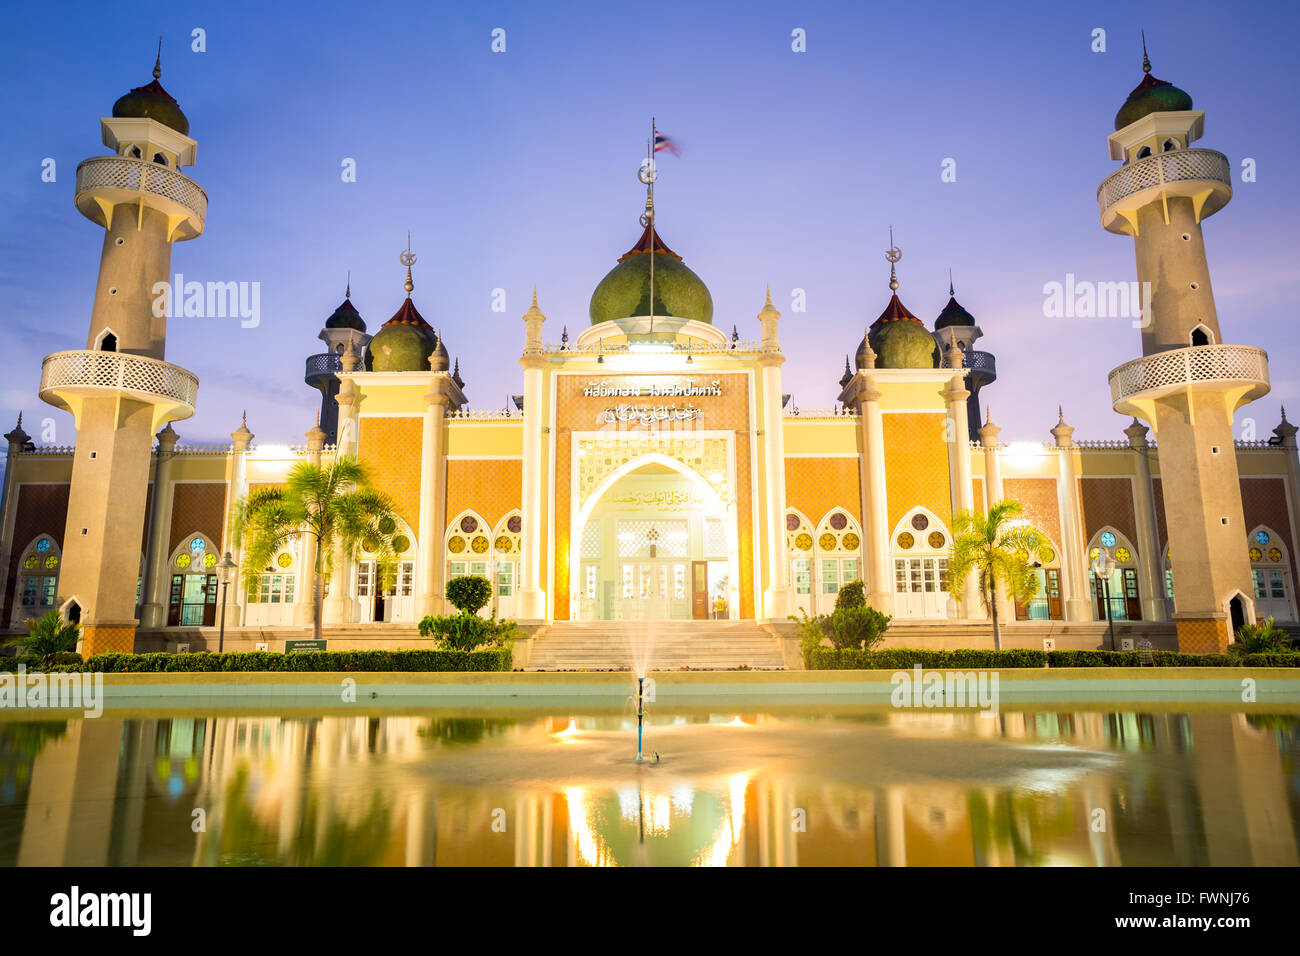 La mosquée centrale d'une réflexion au crépuscule, Pattani, Thaïlande Banque D'Images